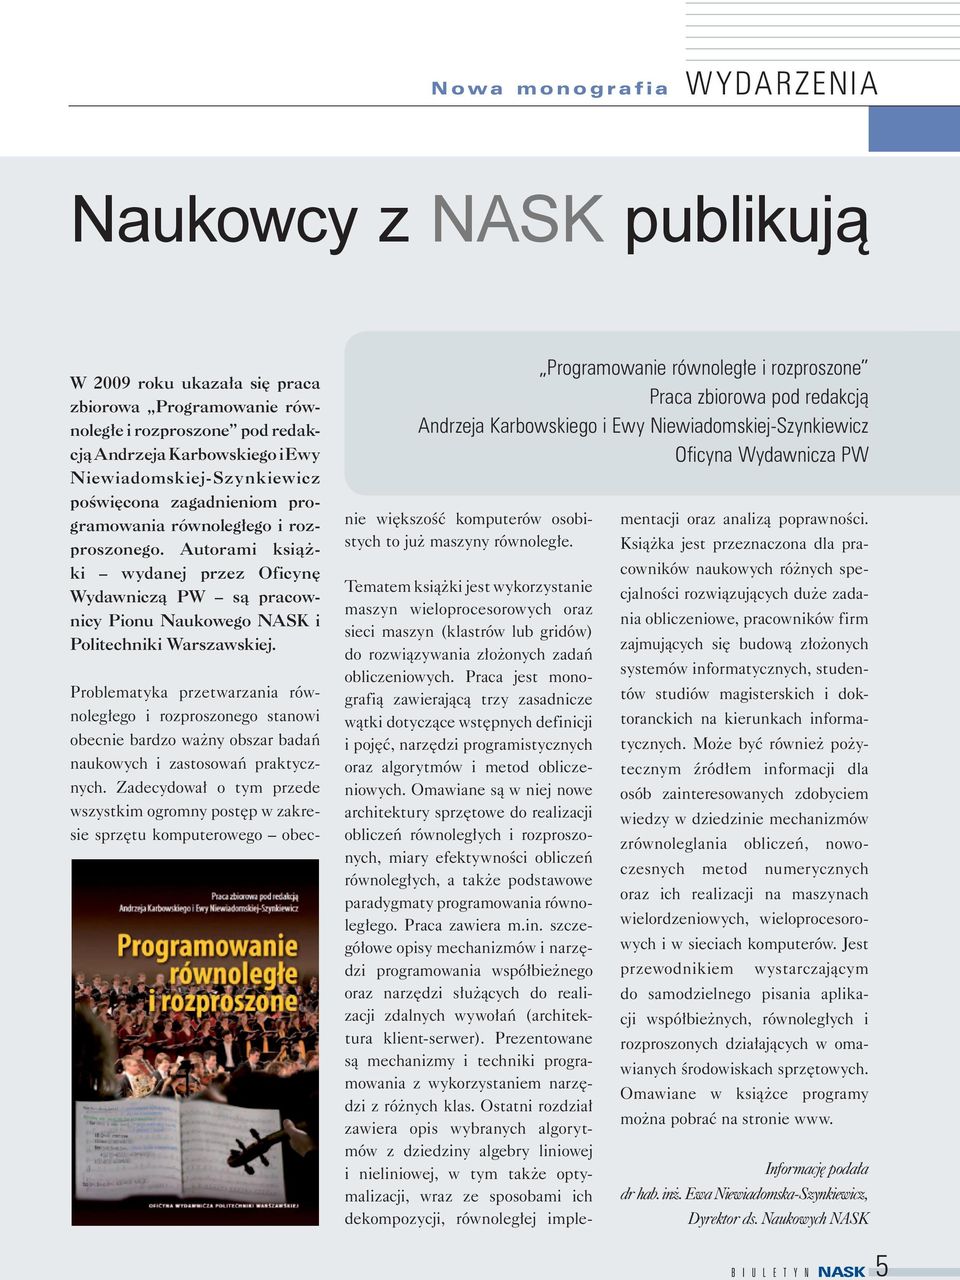 Autorami książki wydanej przez Oficynę Wydawniczą PW są pracownicy Pionu Naukowego NASK i Politechniki Warszawskiej.